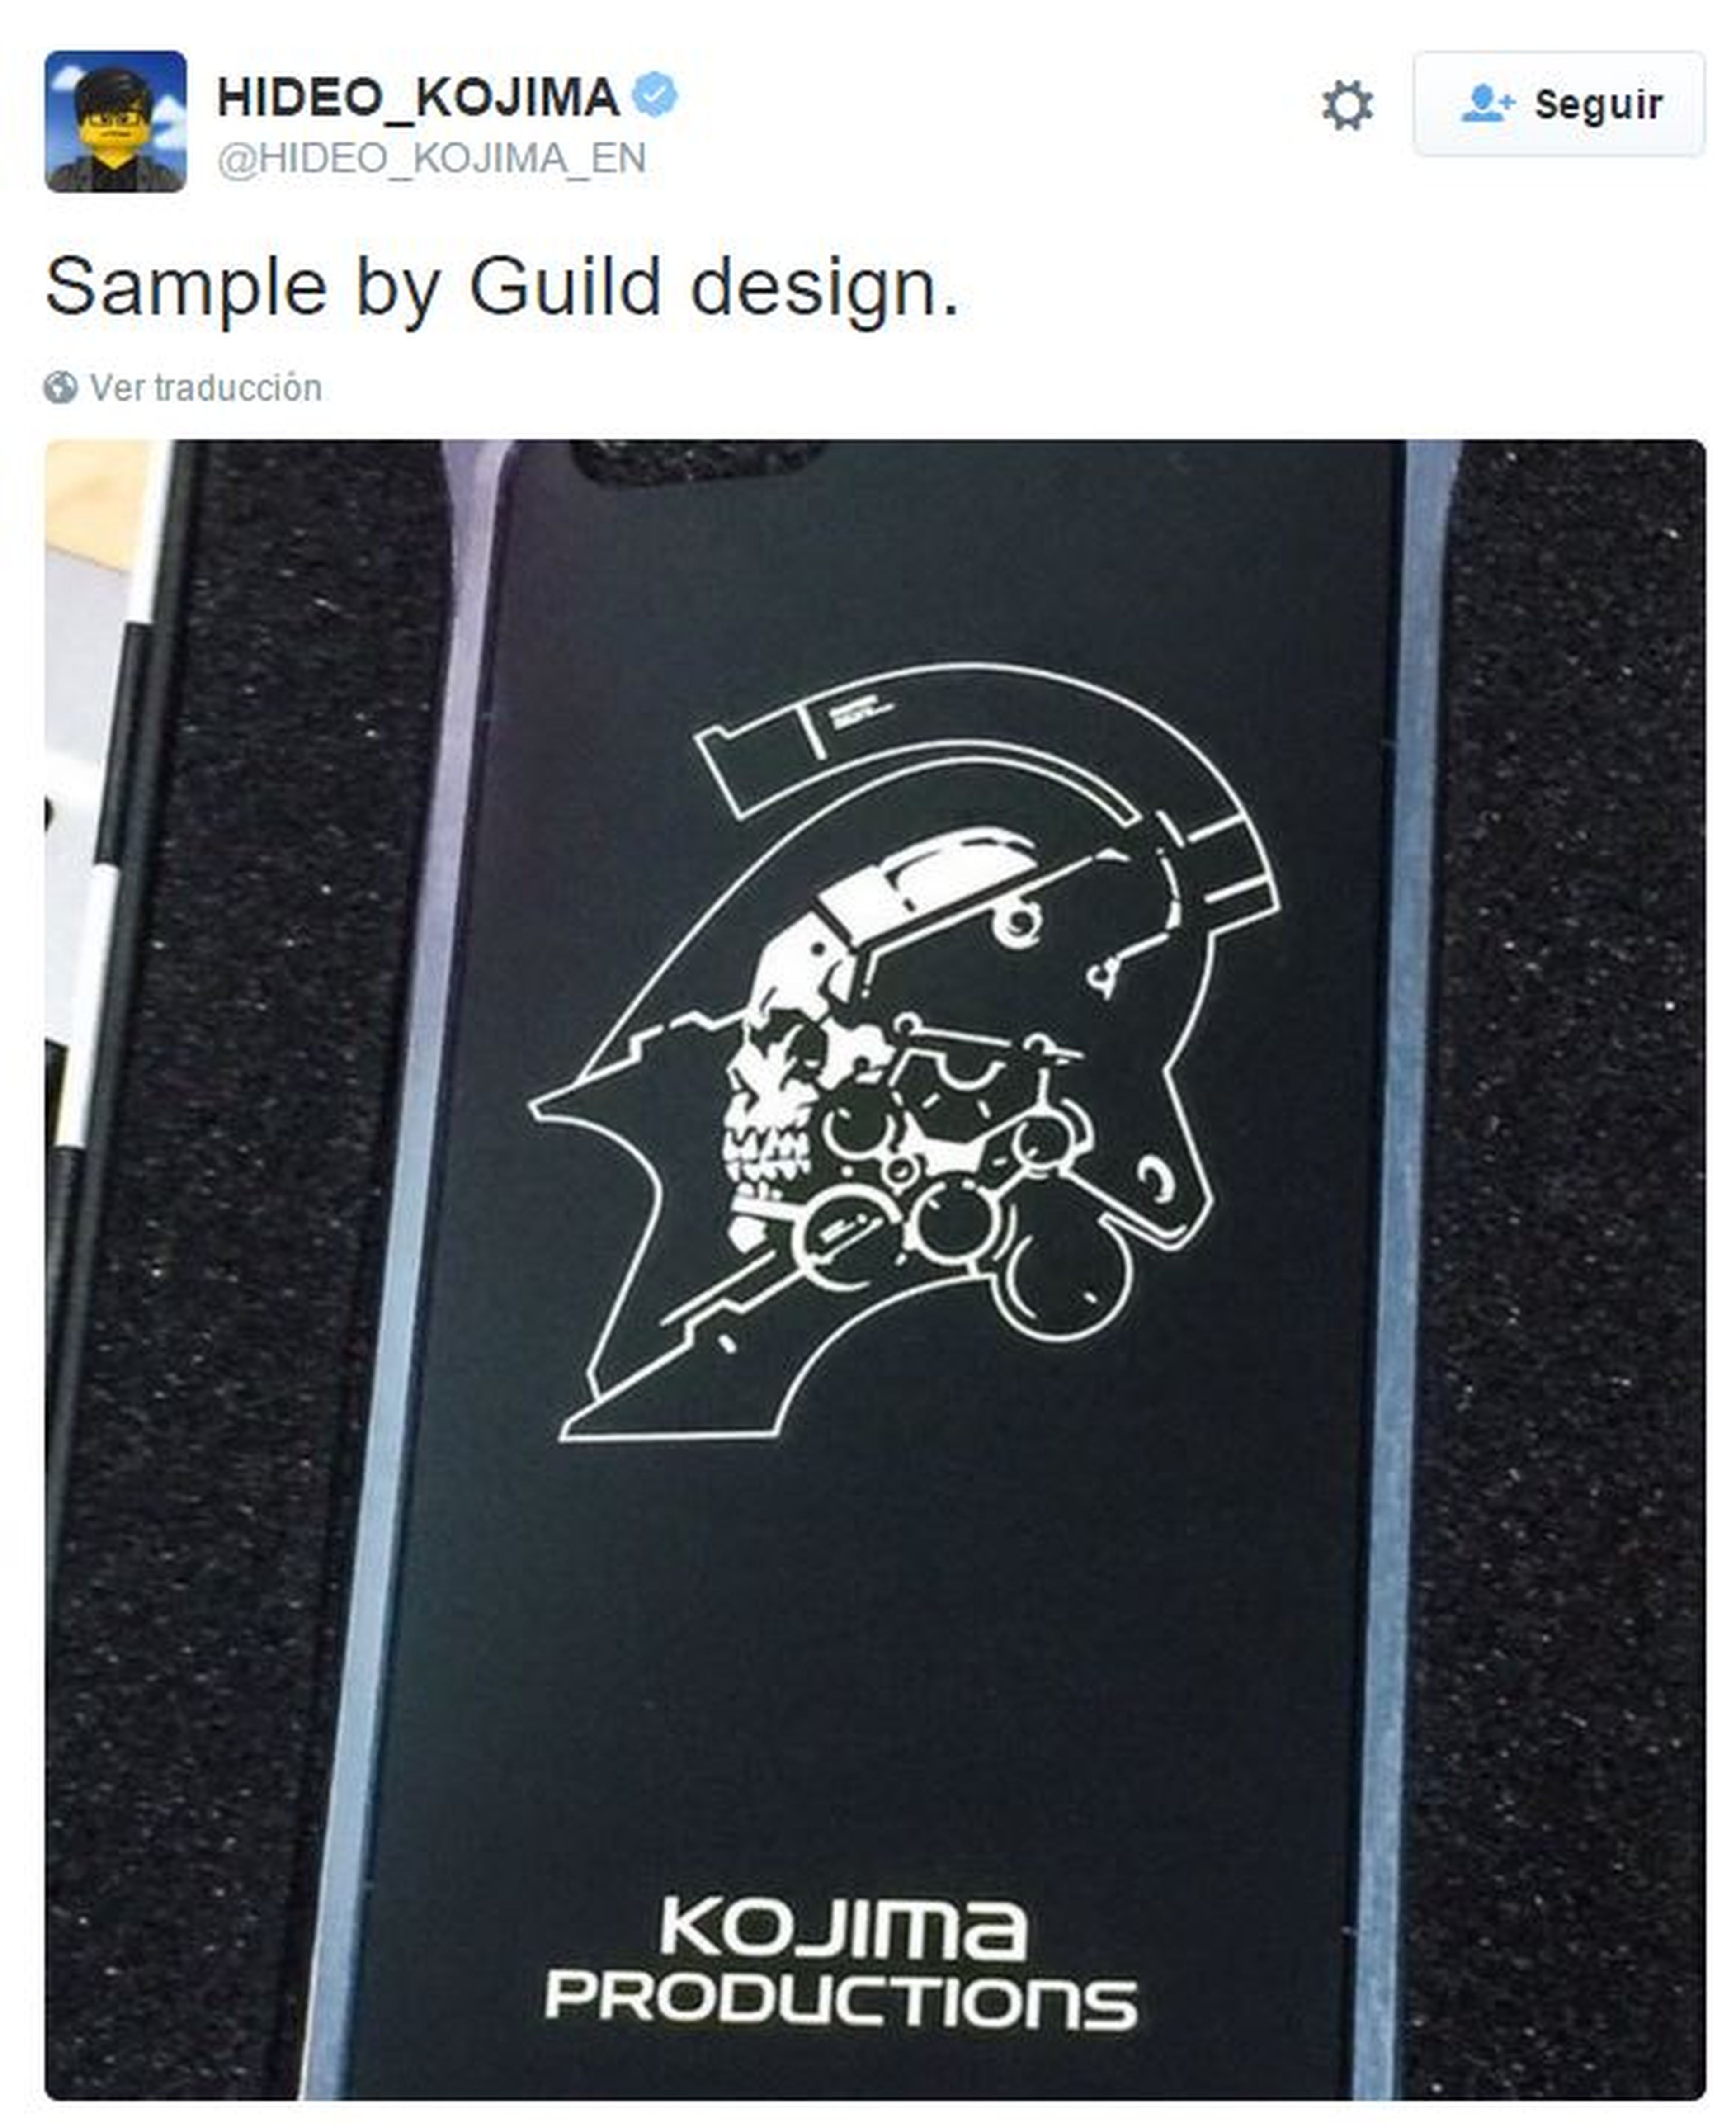 Hideo Kojima muestra el primer "merchandising" con la nueva imagen de su estudio